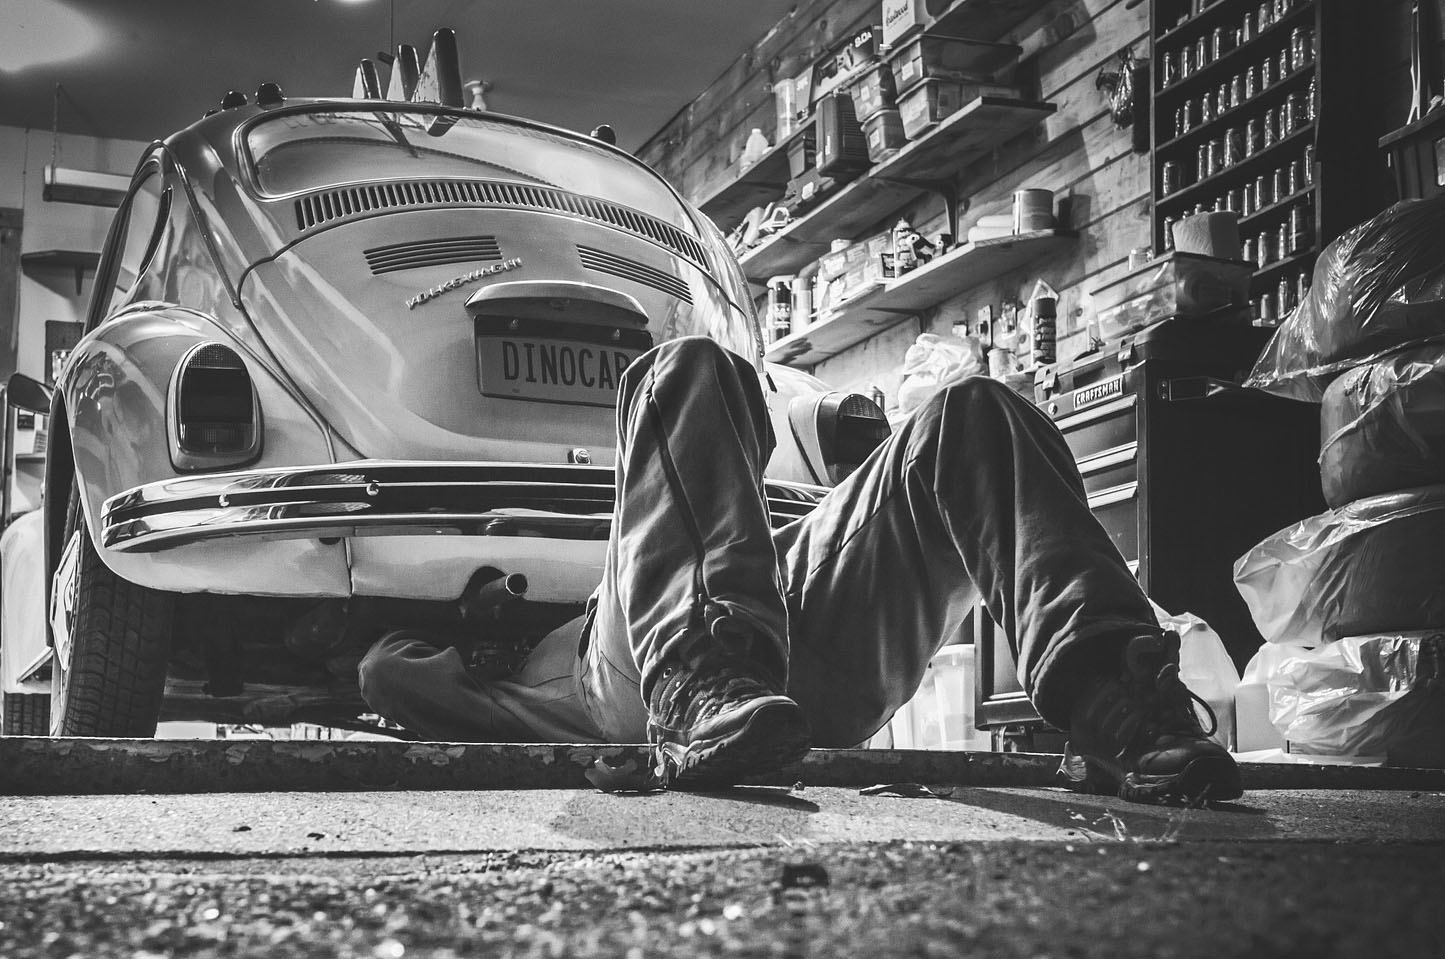 Auto mechanic working on vintage Volkswagen Beetle